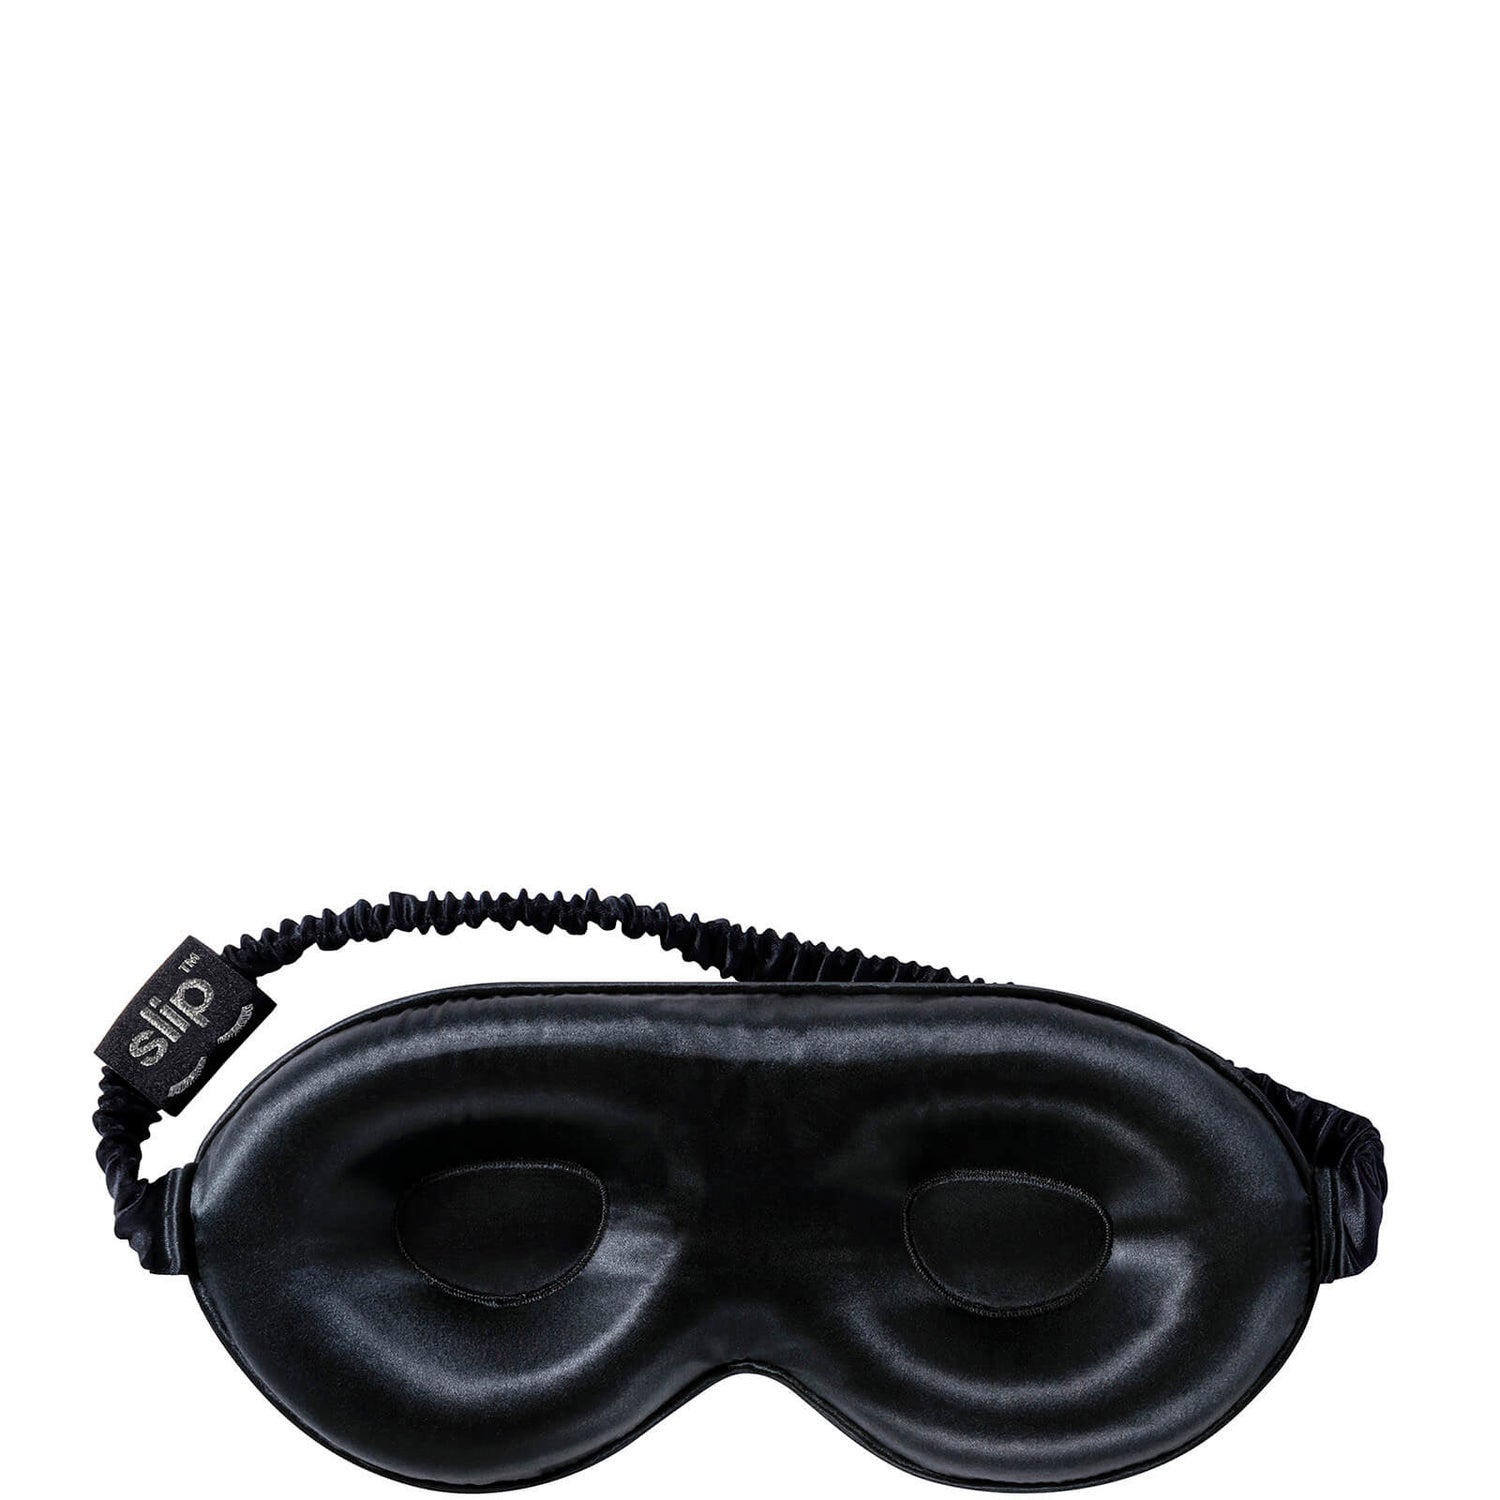 slip contour sleep mask -‘lovely lashes’ Black 1piece